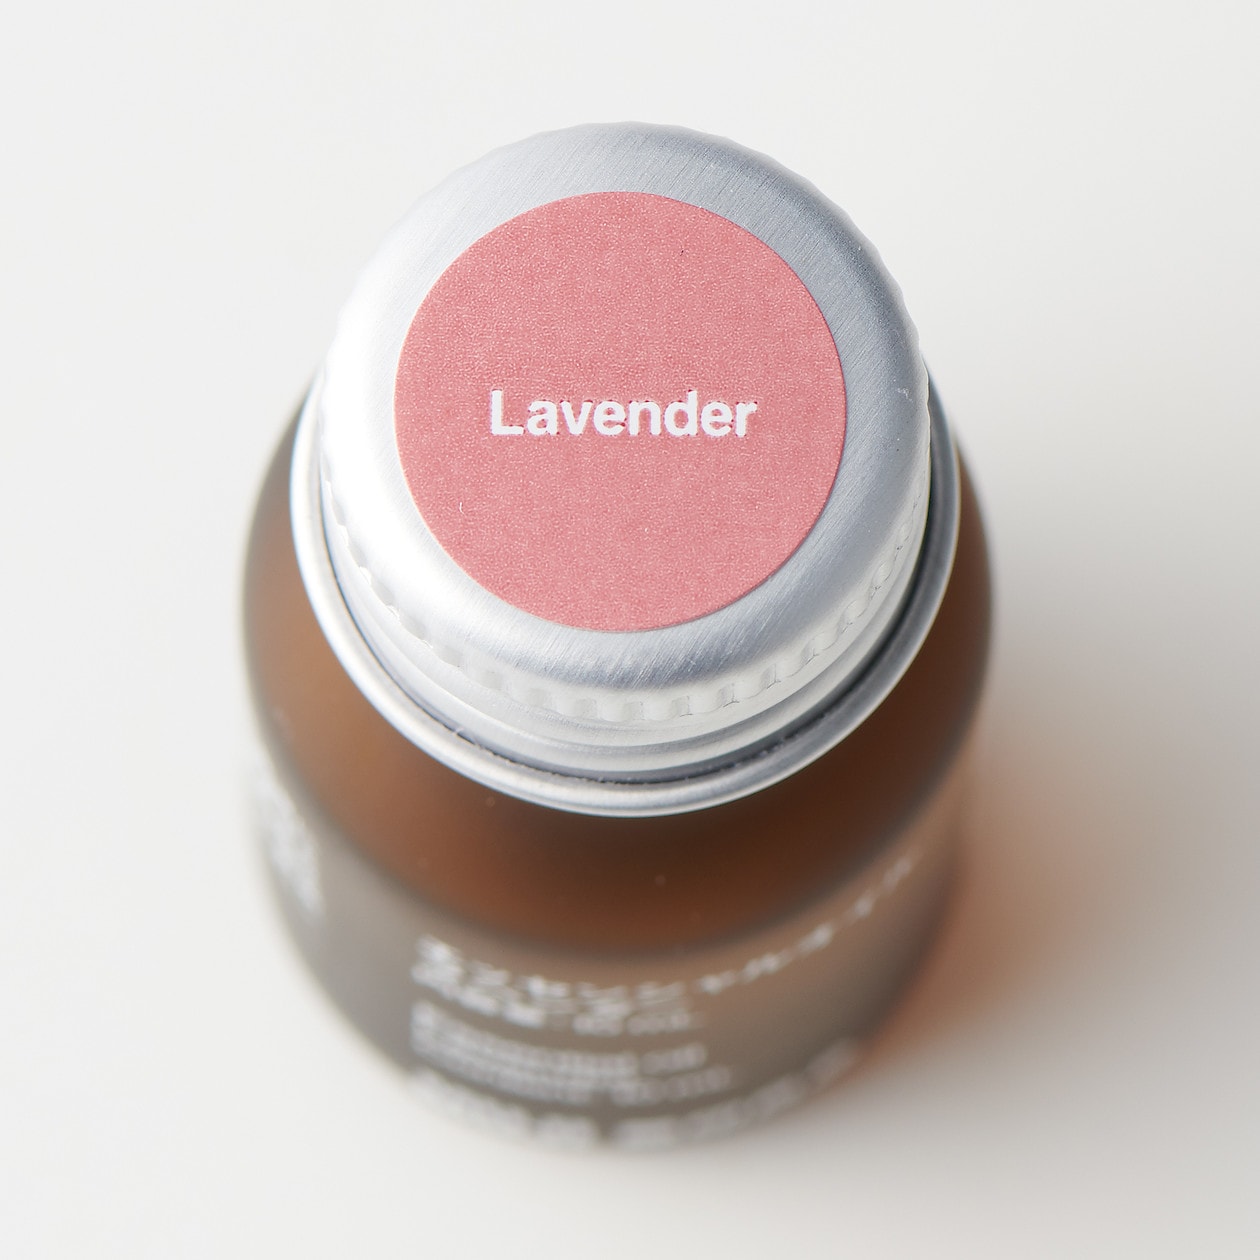 มูจิ น้ำมันหอมระเหย 10 มล. - MUJI Essential Oil 10 ML  scent Lavender